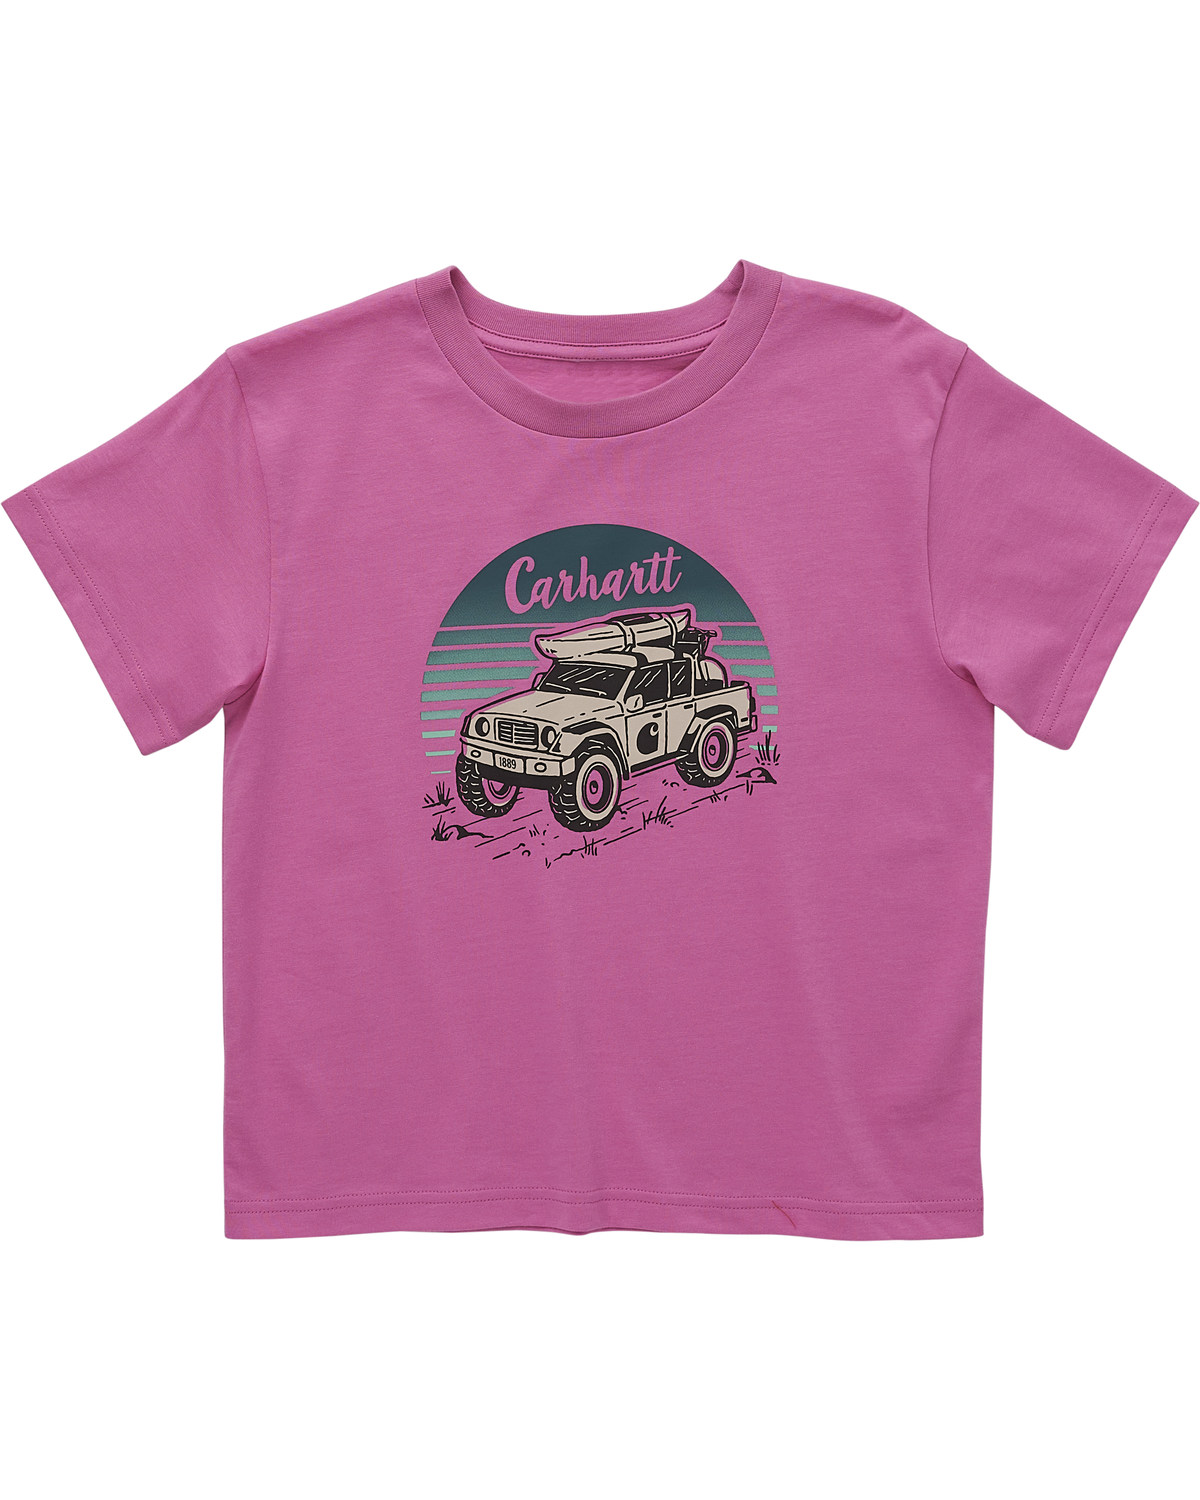 Carhartt Toddler Girls' Off Road Short Sleeve T-Shirt